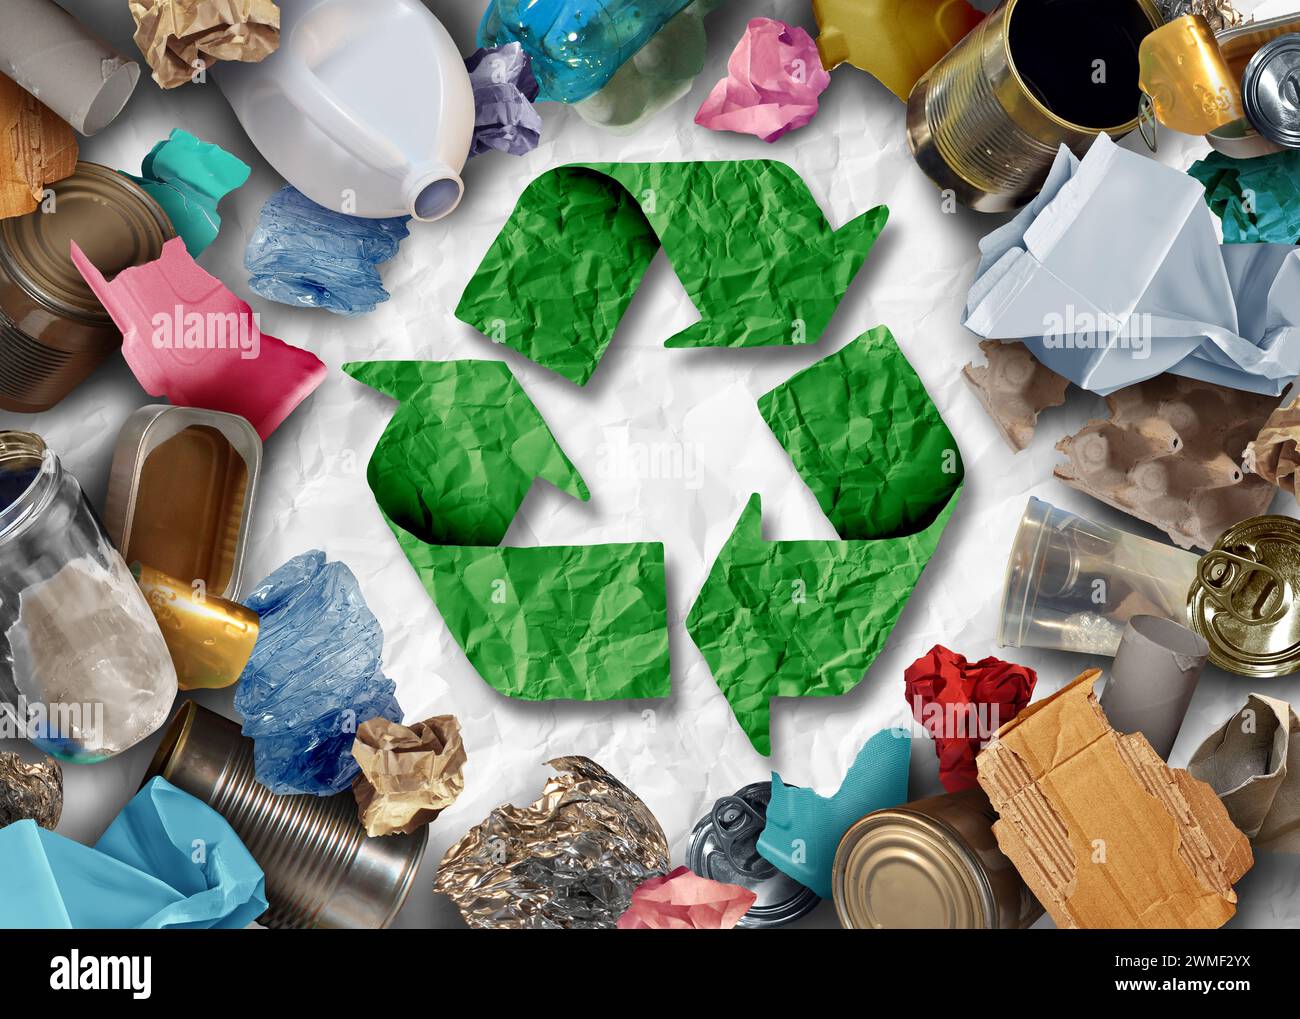 Riciclo problema sociale per riciclare rifiuti e rifiuti come elementi riutilizzabili gestione come carta vetro metallo e plastica vecchi gettati in un contenitore per rifiuti Foto Stock